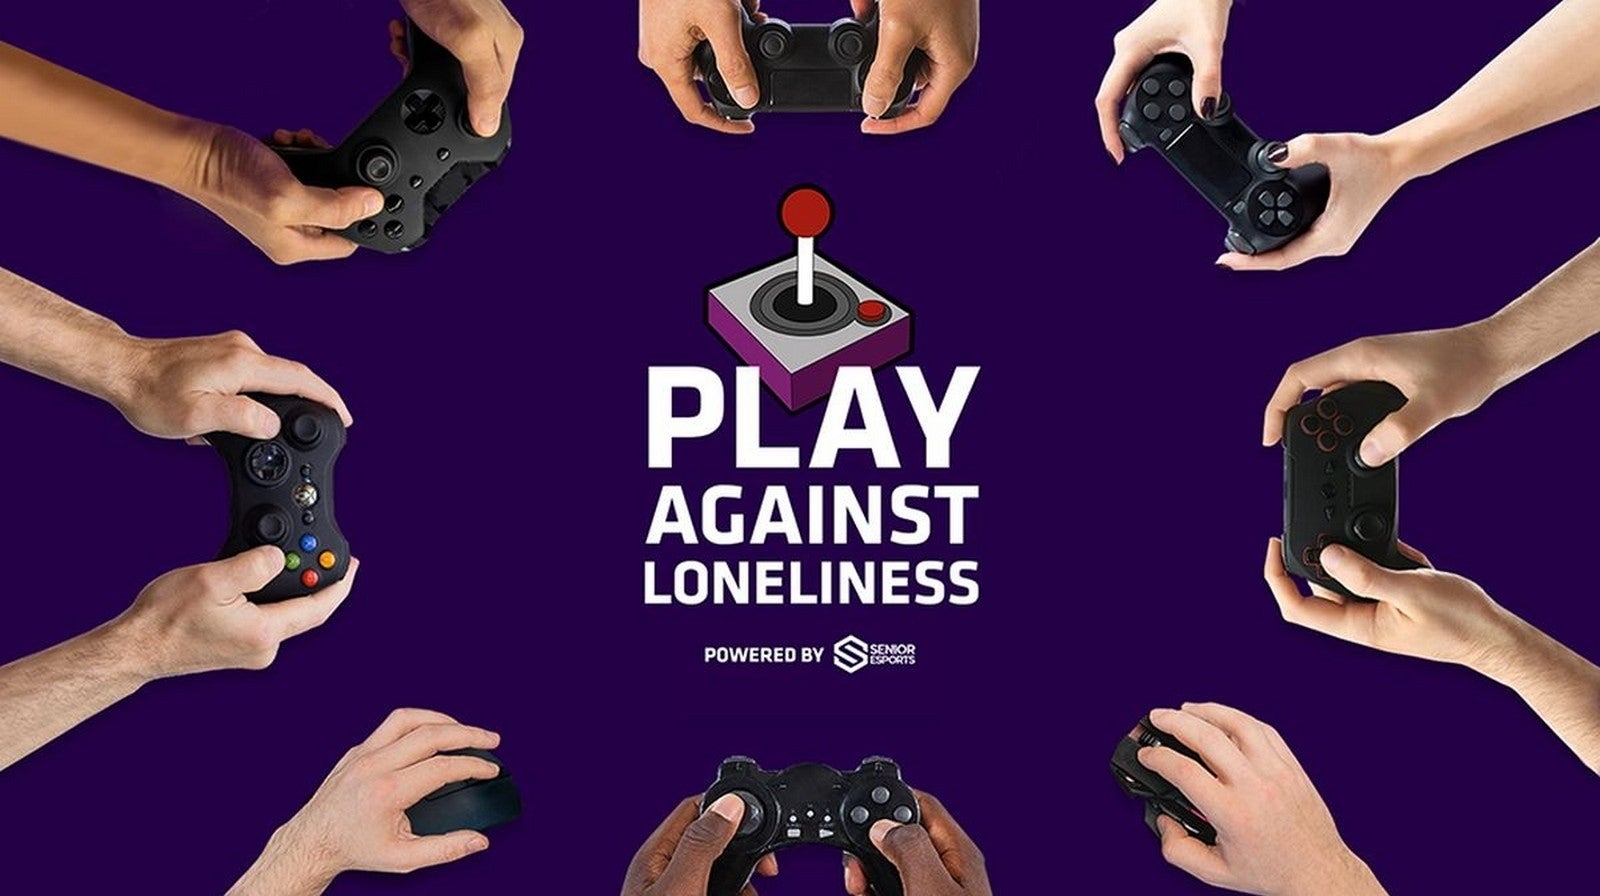 Bilder zu "Play against Loneliness" - Mit Senior eSports' neuer Kampagne gegen die Corona-Einsamkeit anspielen